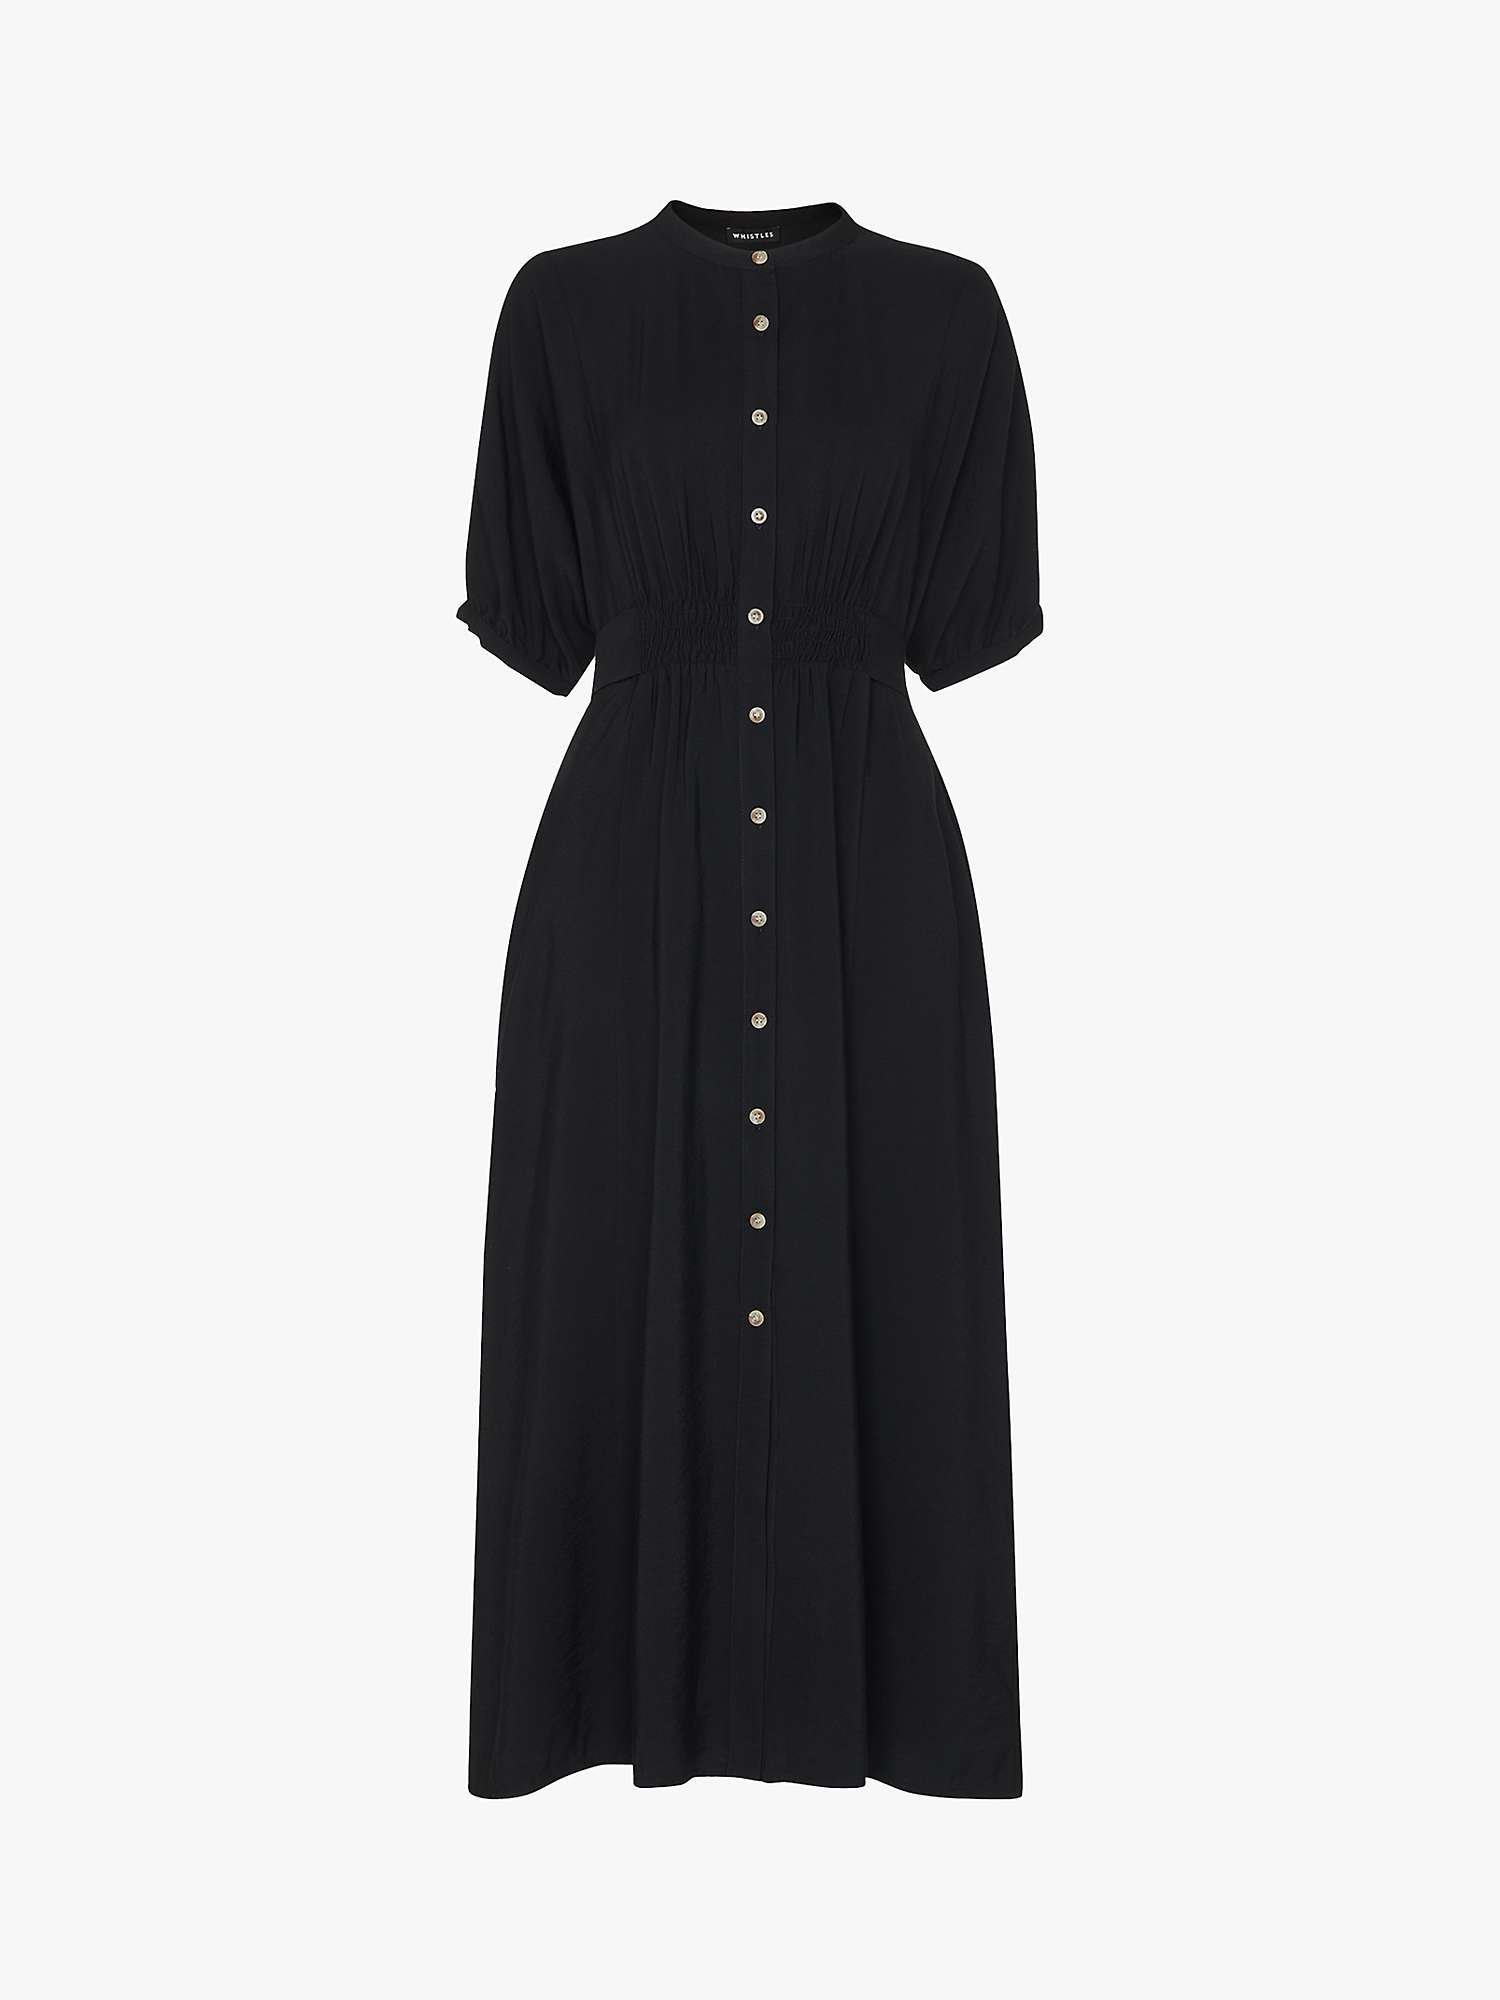 Whistles Petite Plain Shirt Dress, Black at John Lewis & Partners